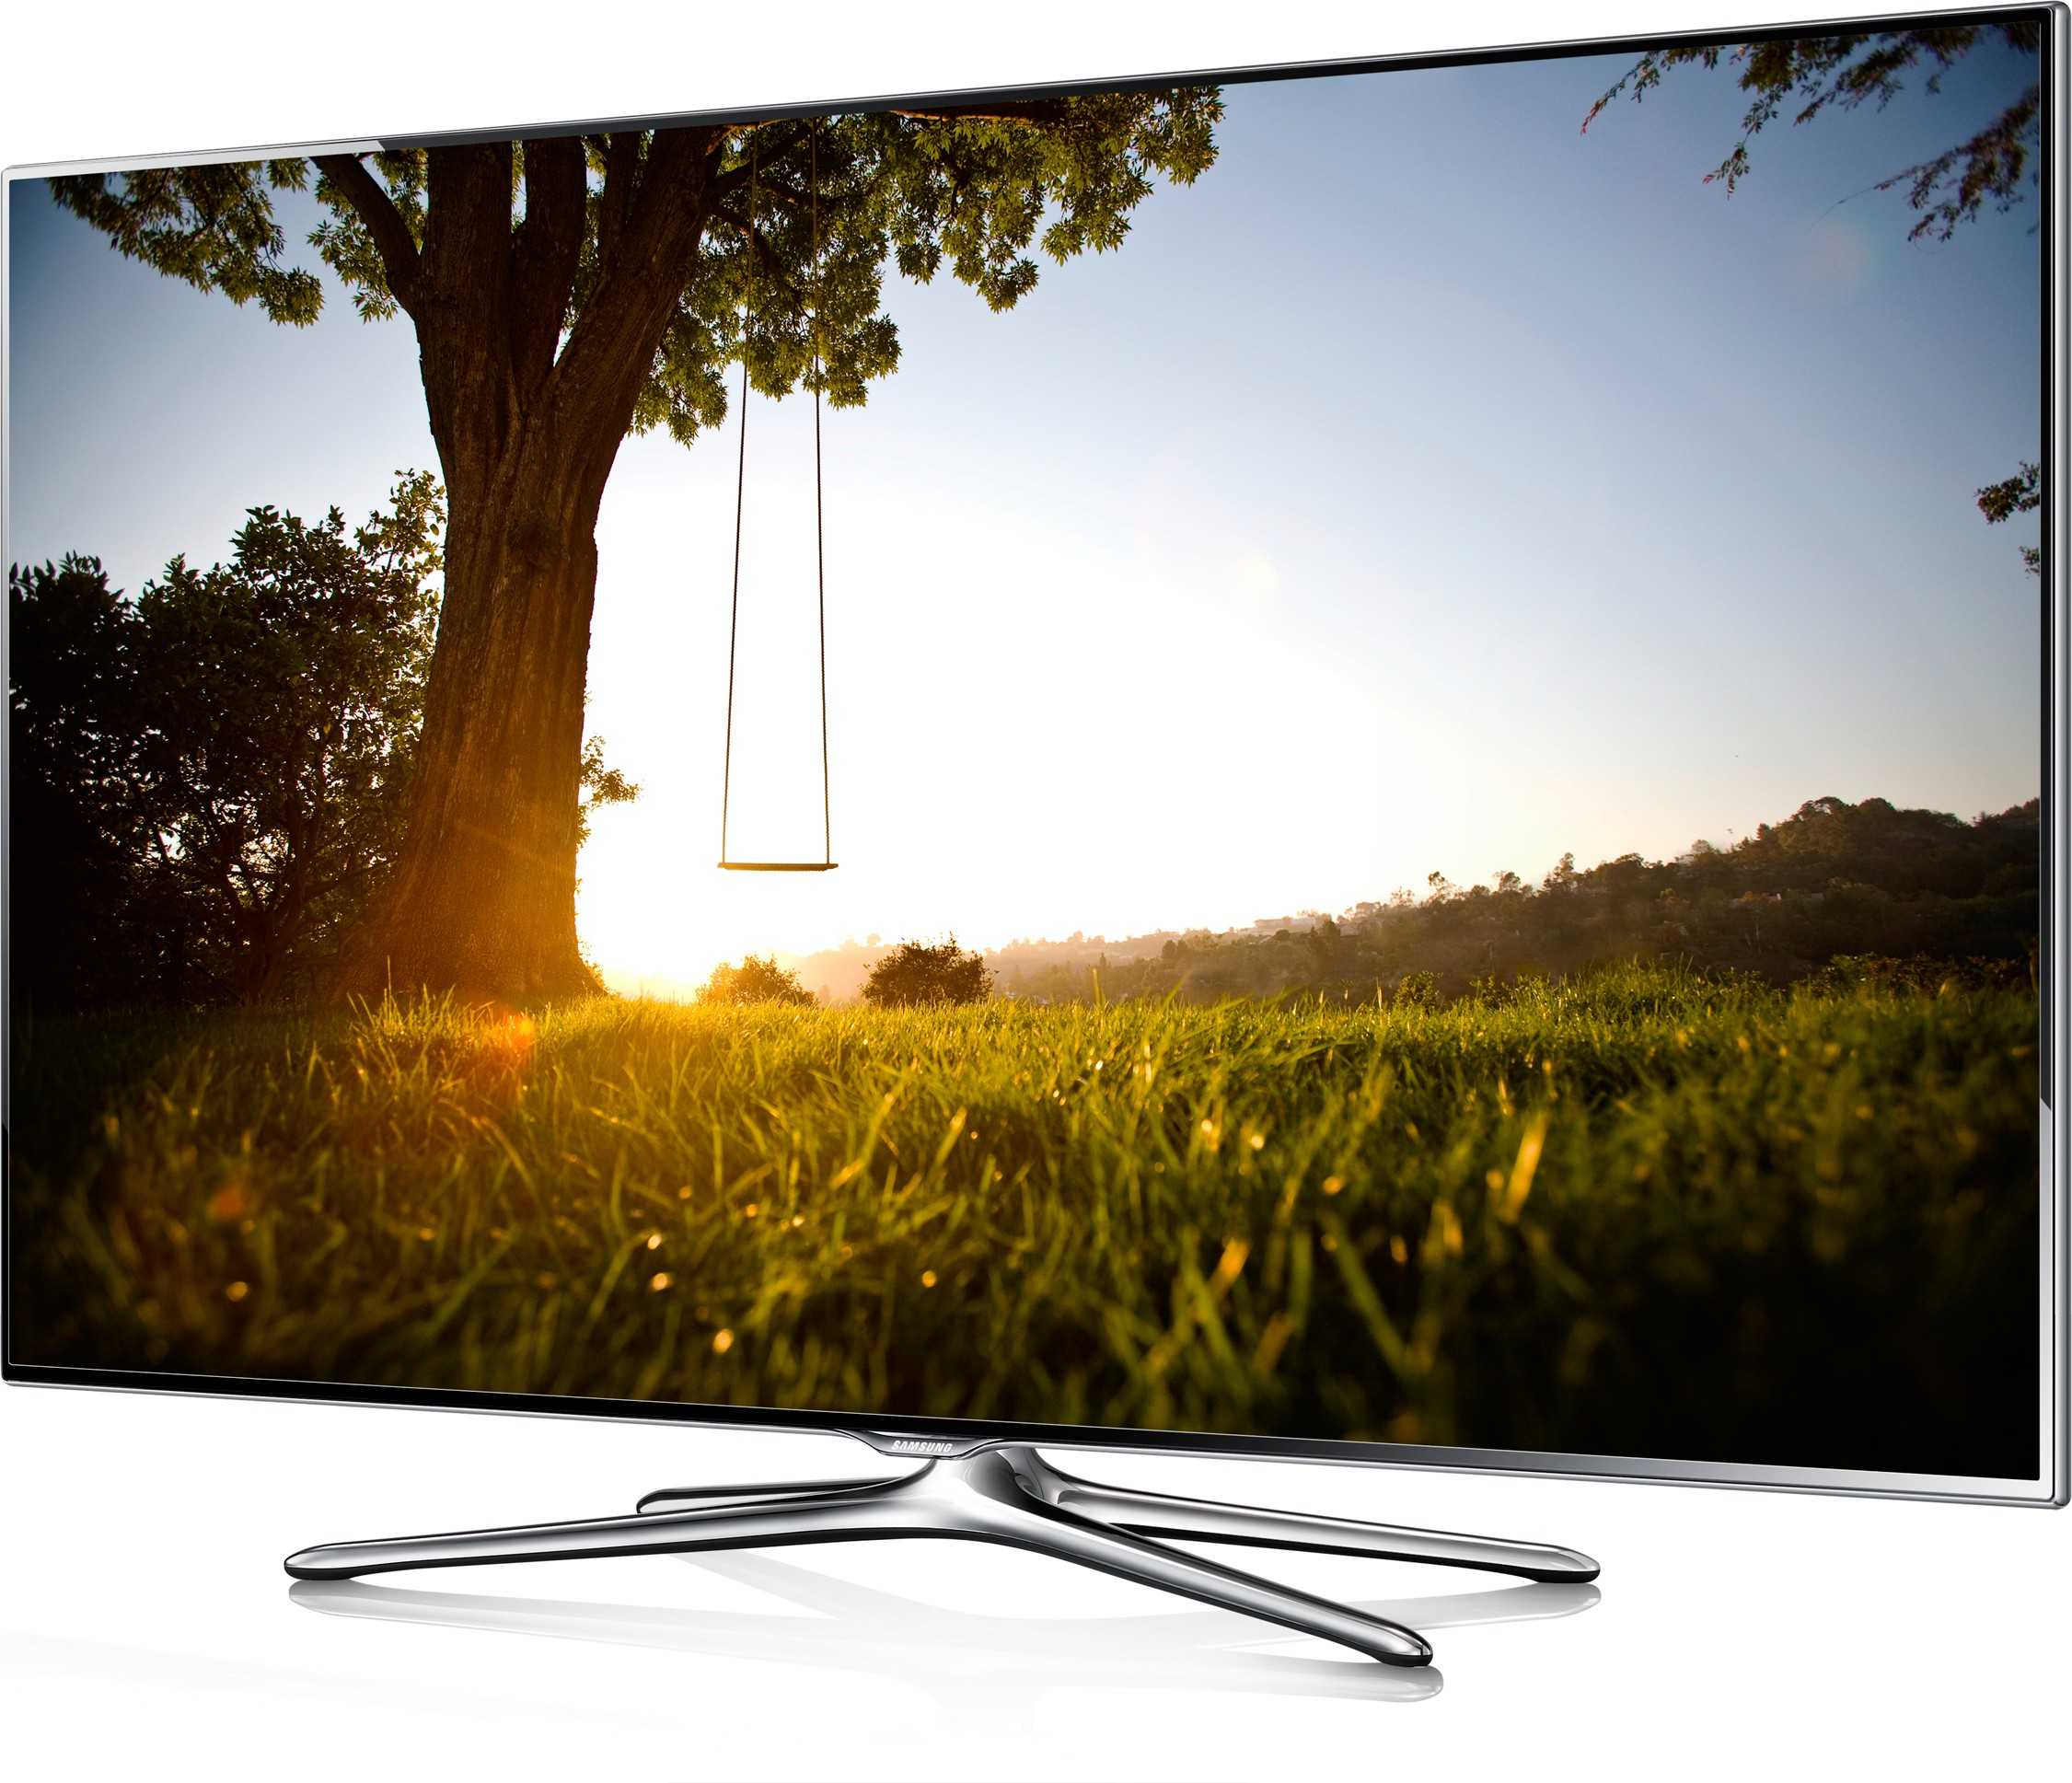 Samsung ue46es6540 - купить , скидки, цена, отзывы, обзор, характеристики - телевизоры